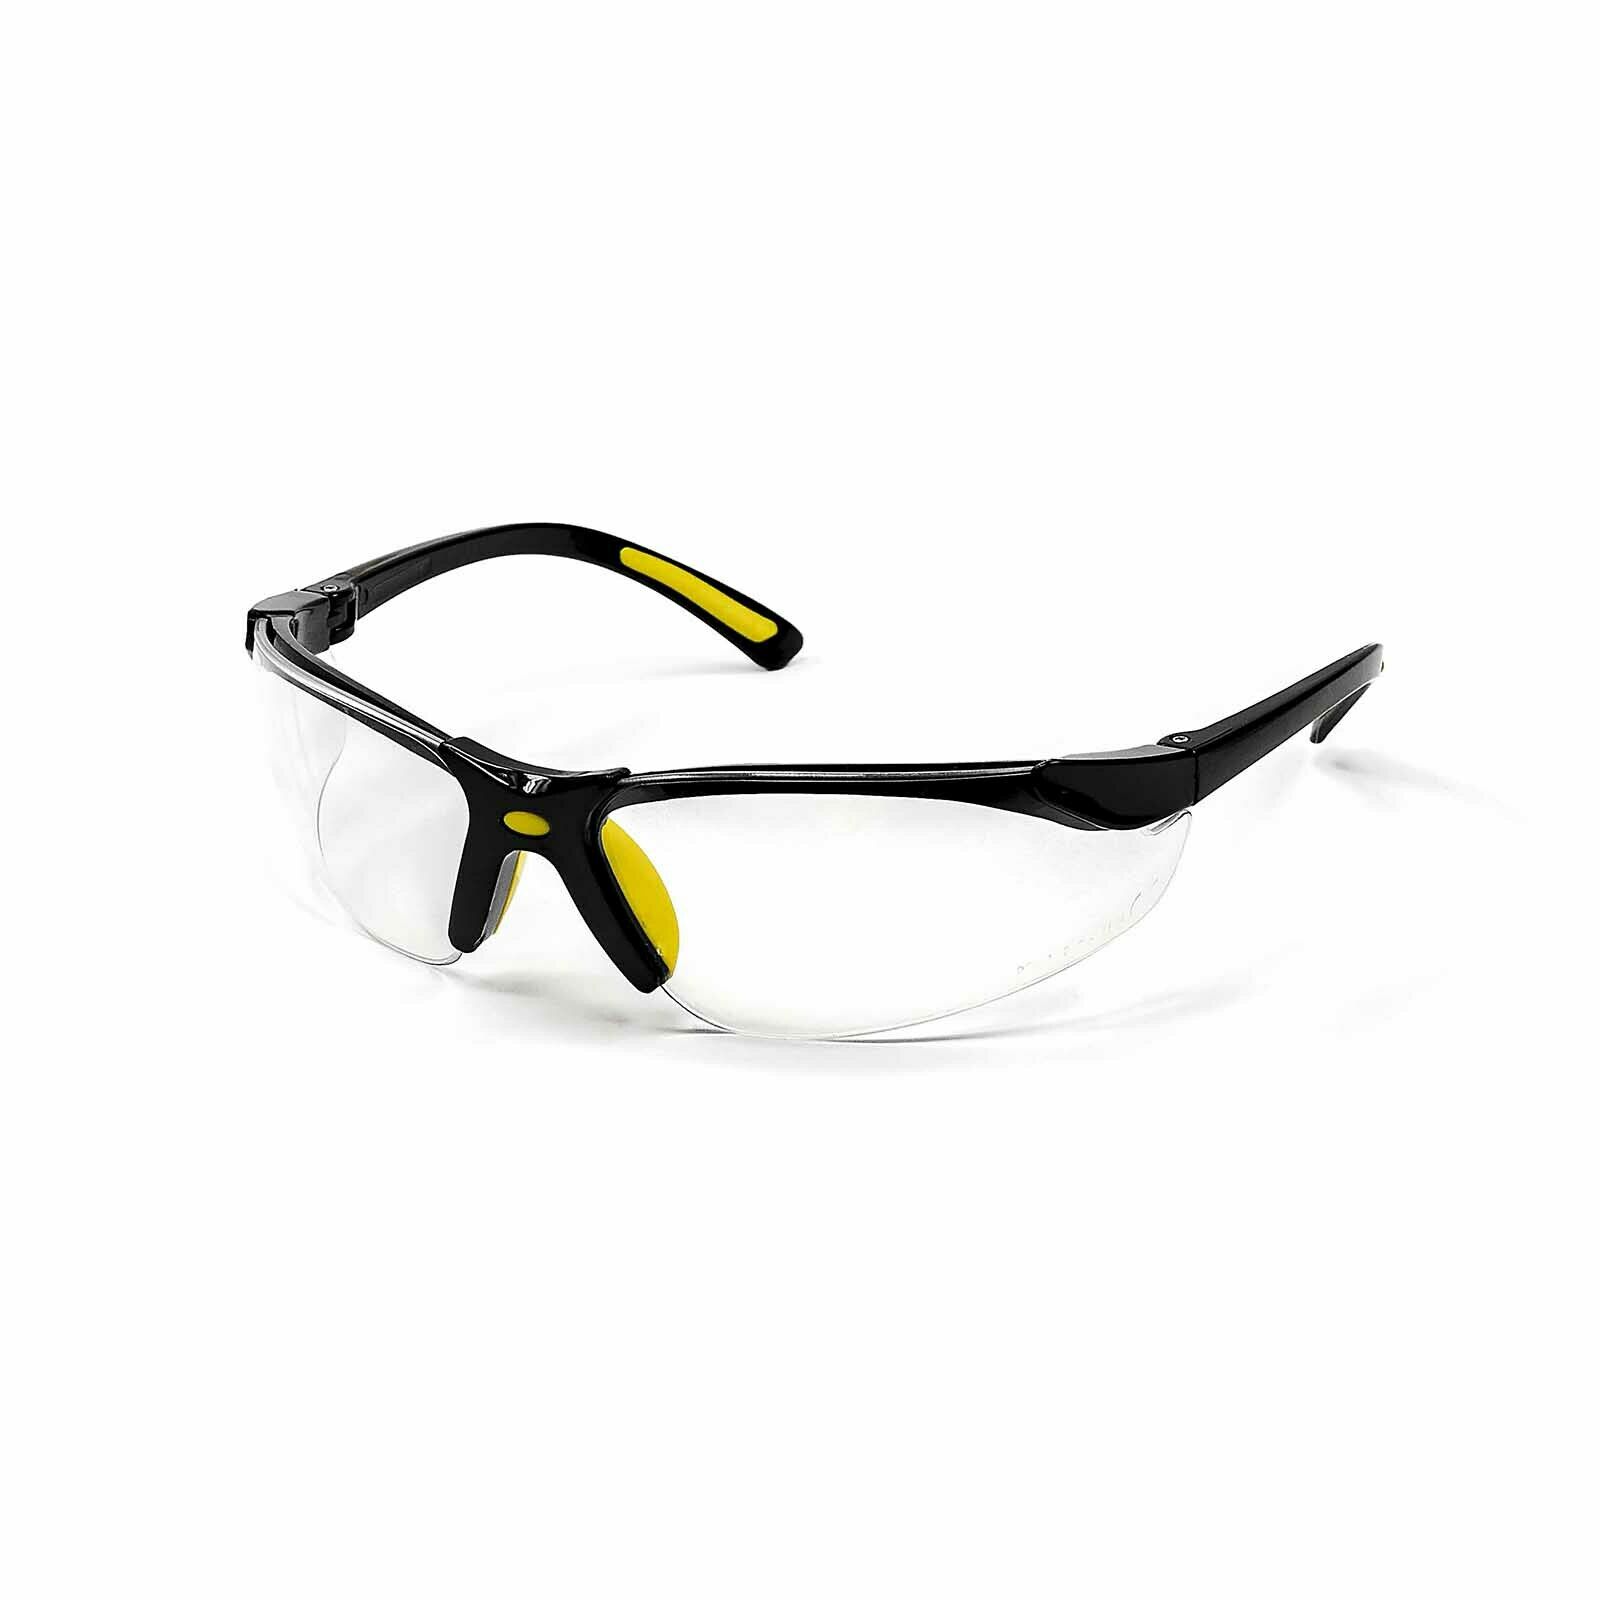 Schutzbrillen-Set, 2-teilig